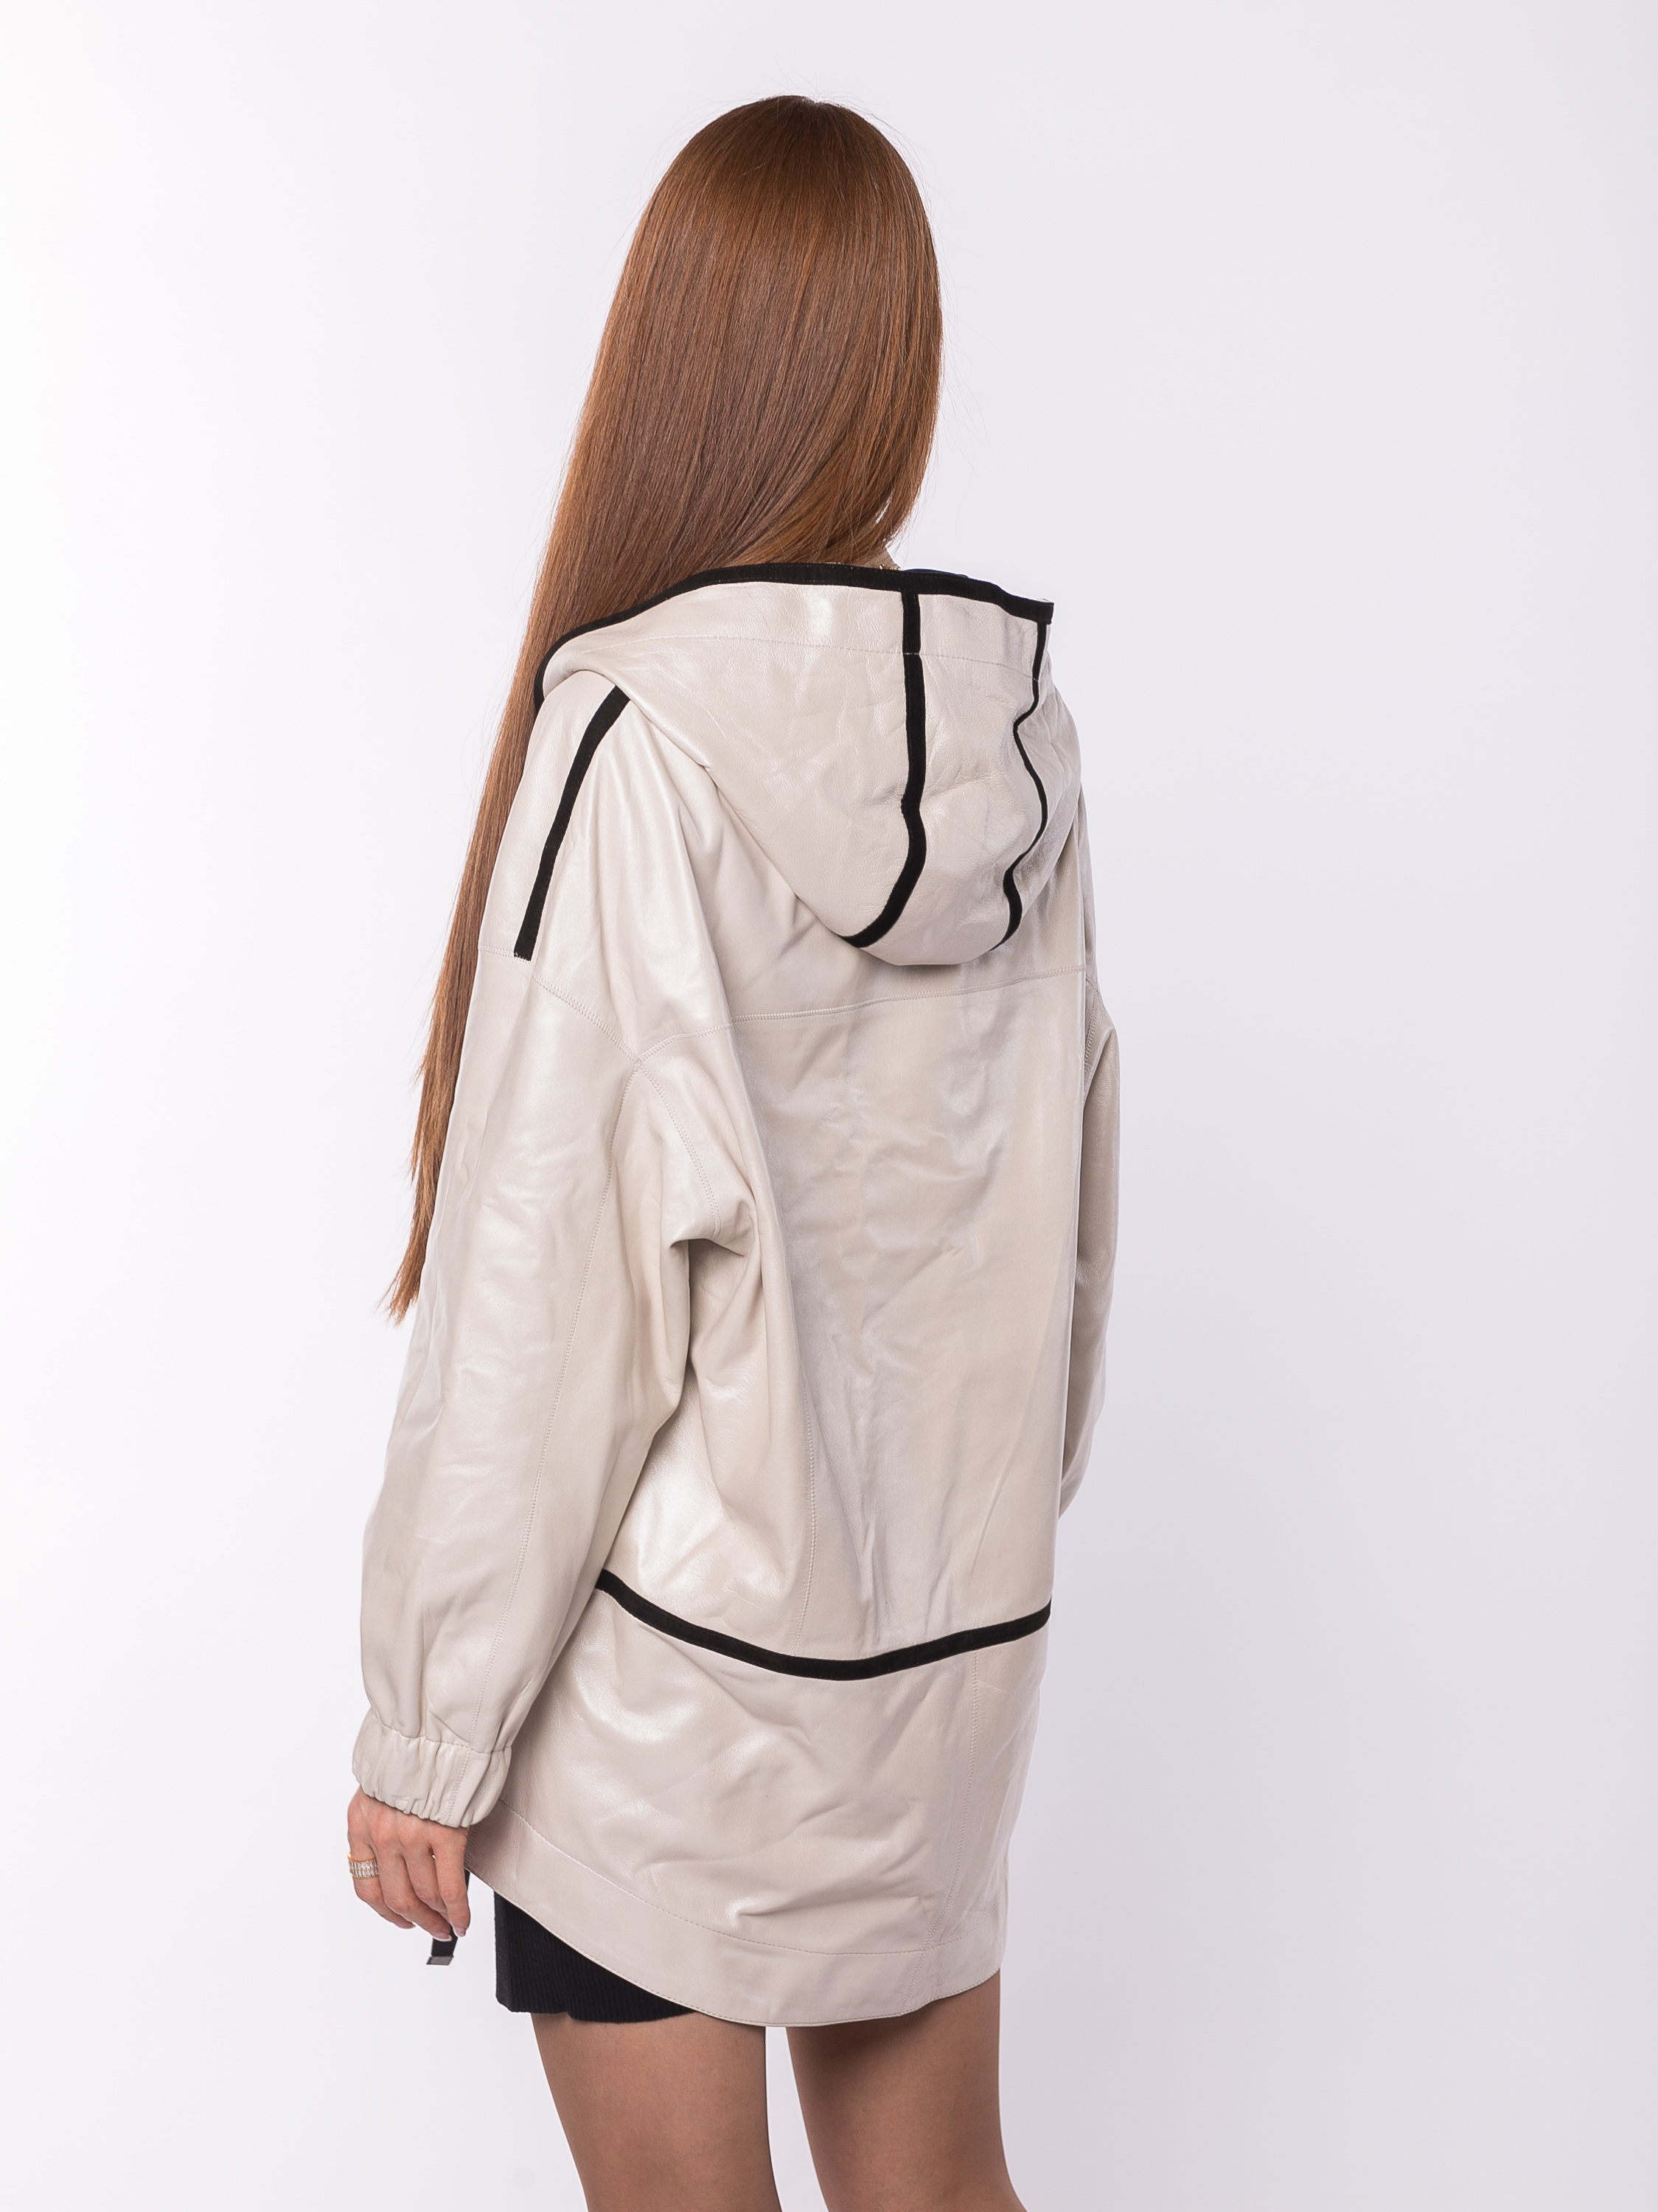 Куртка женская двухсторонняя кожаная с капюшоном 54001